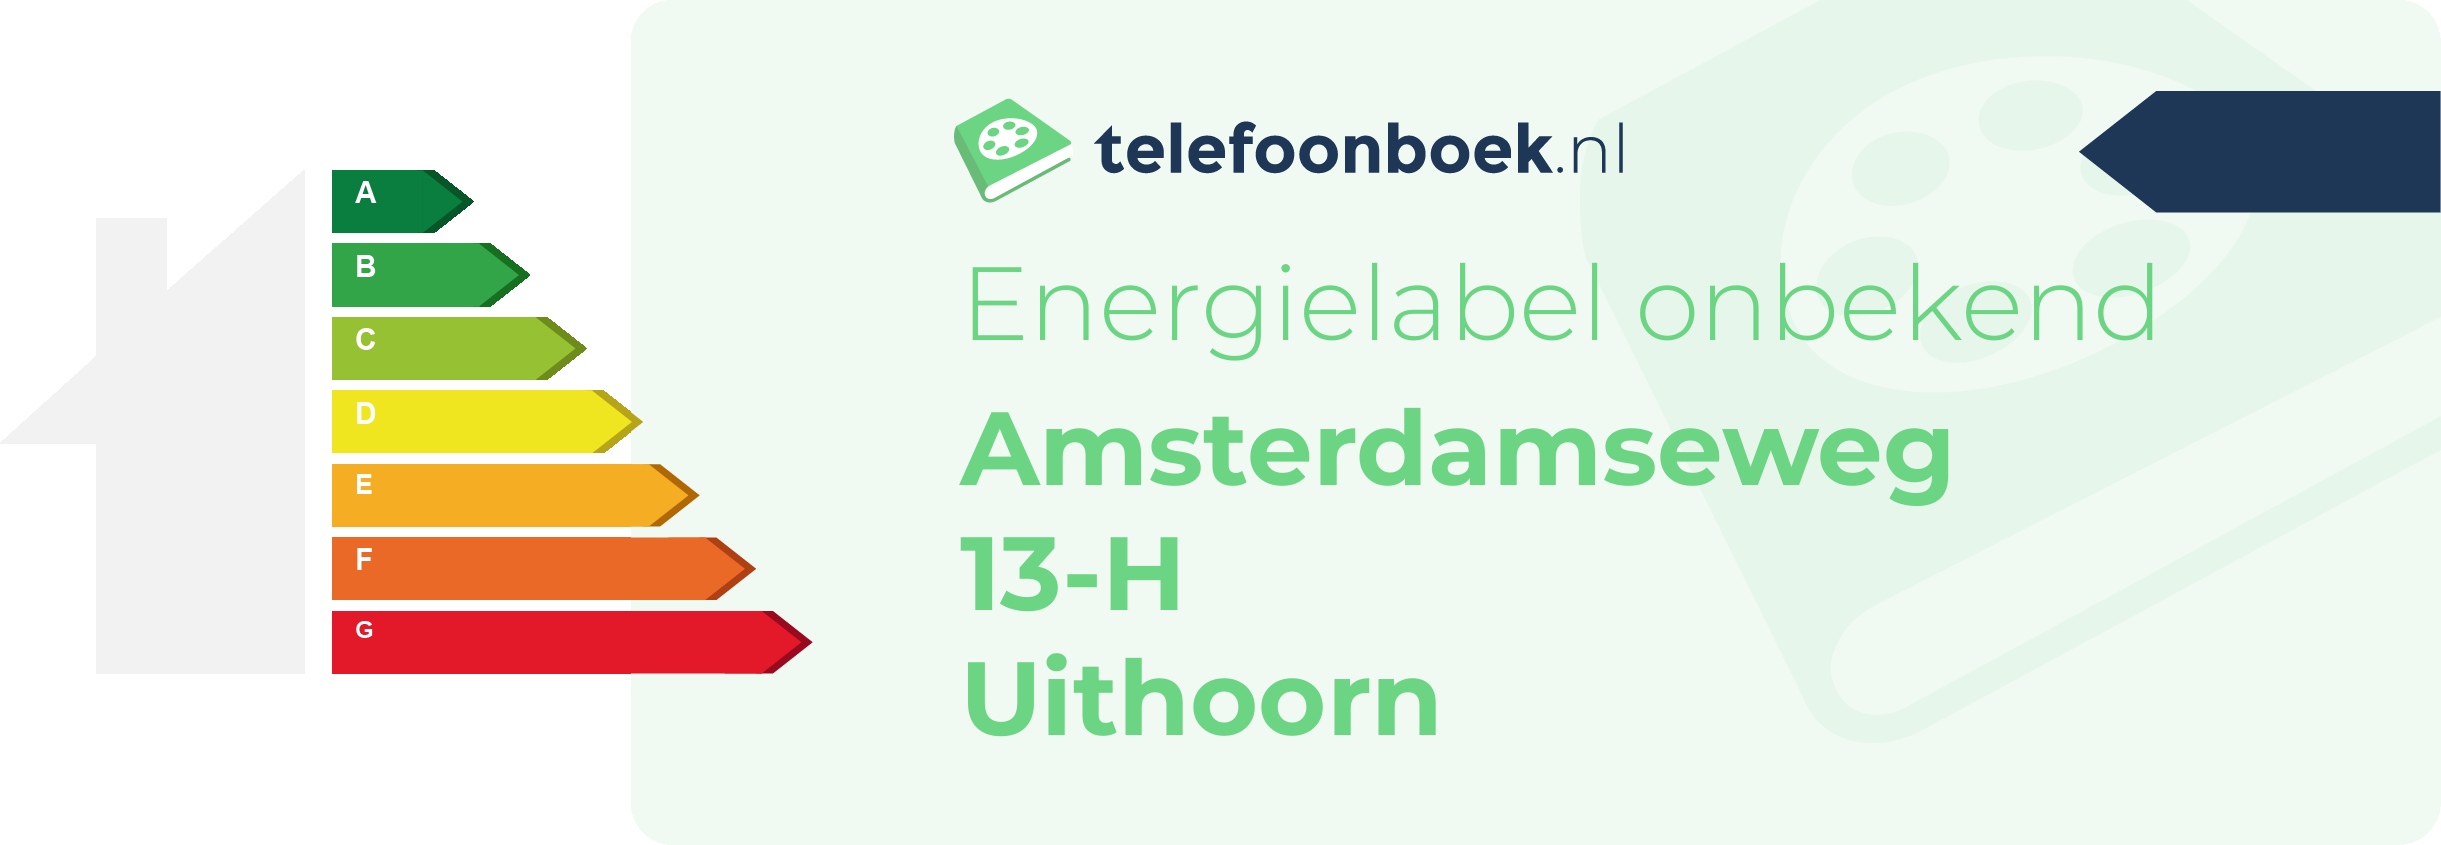 Energielabel Amsterdamseweg 13-H Uithoorn